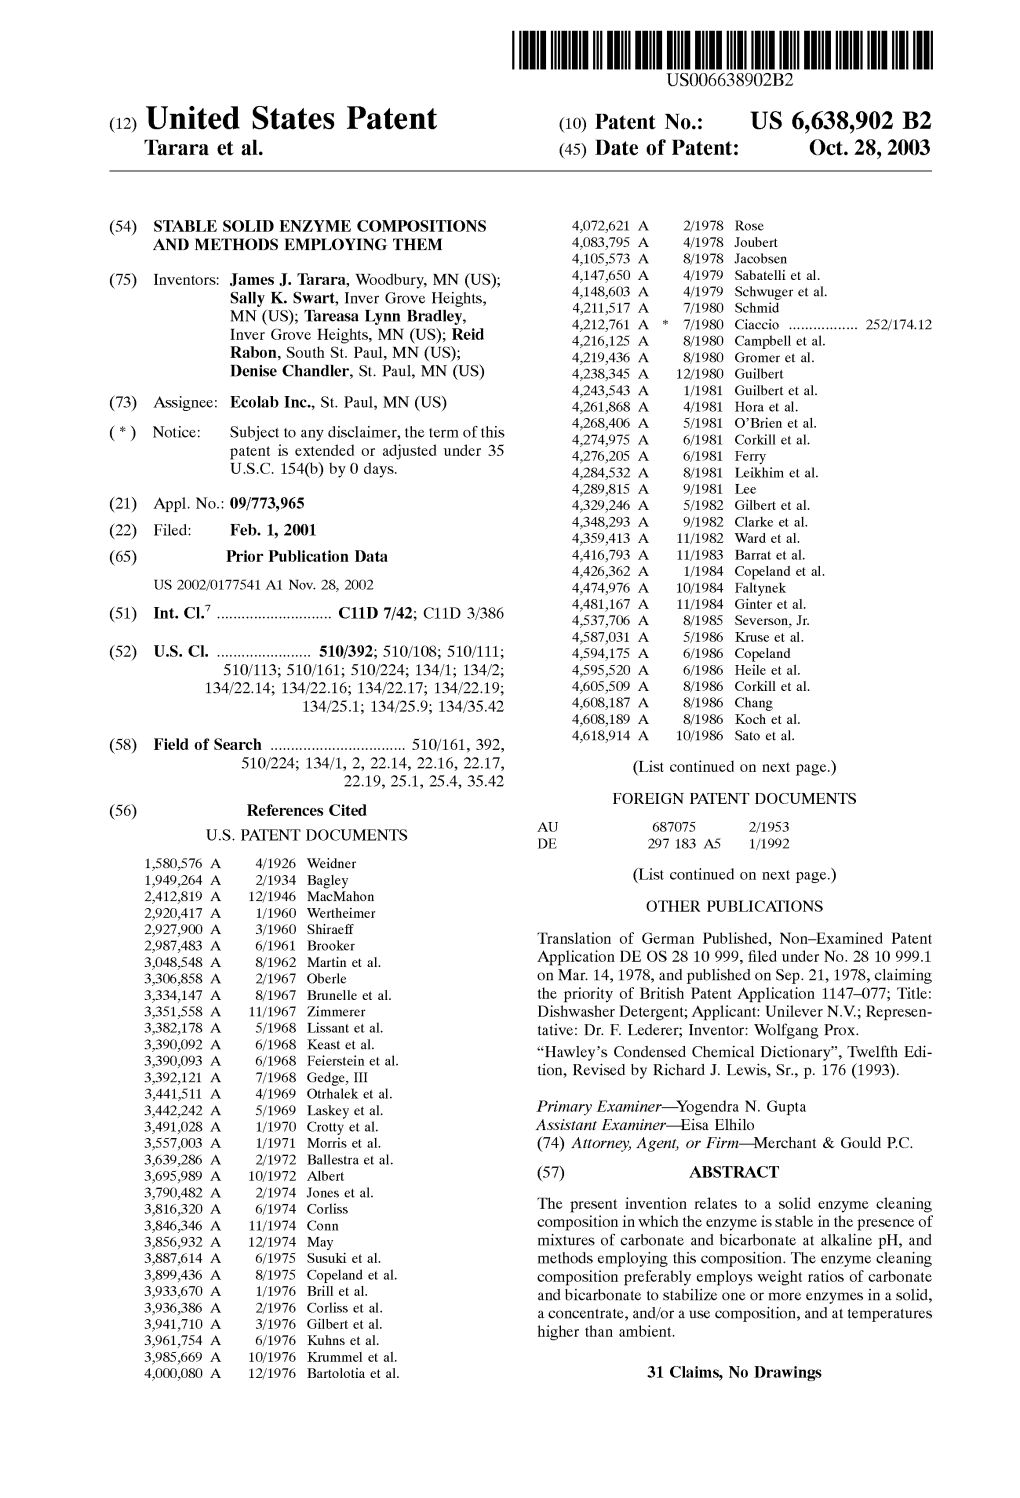 (12) United States Patent (10) Patent No.: US 6,638,902 B2 Tarara Et Al